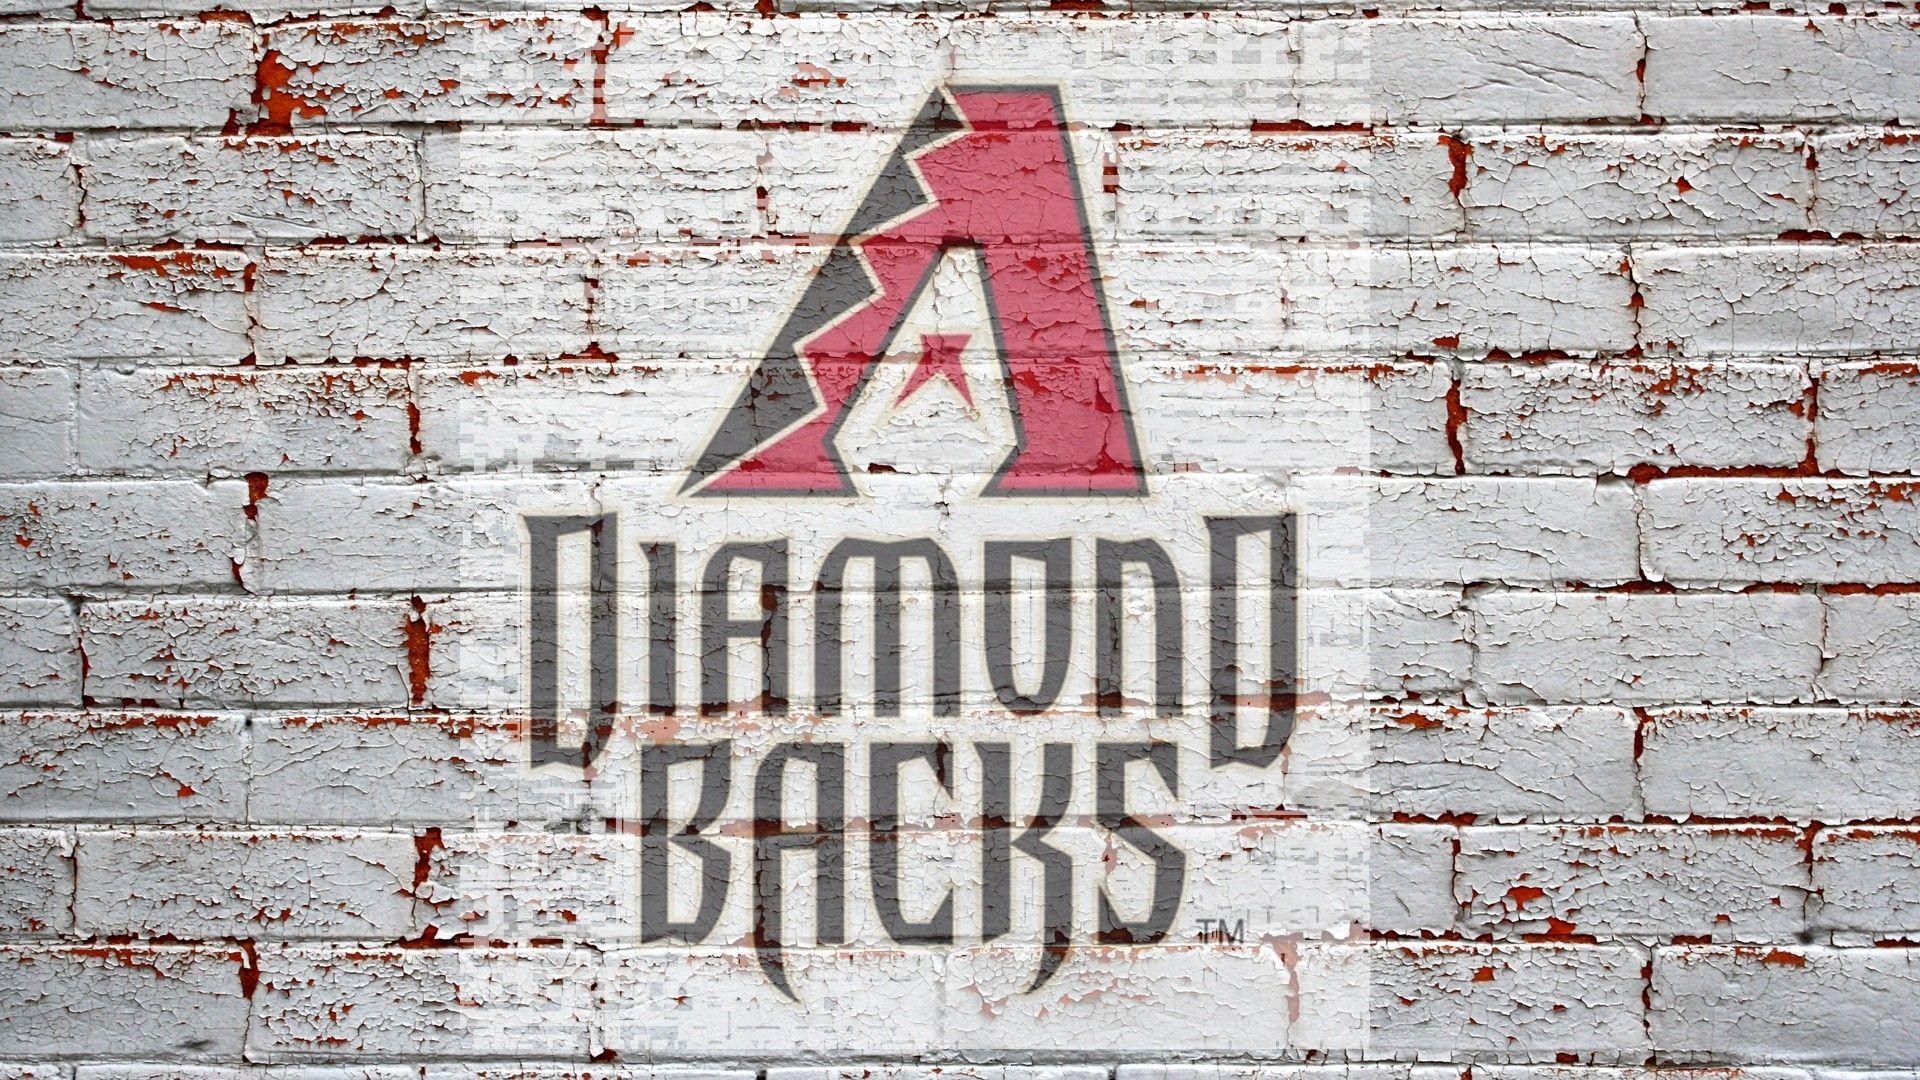 آریزونا دایموندبکس (Arizona Diamondbacks)